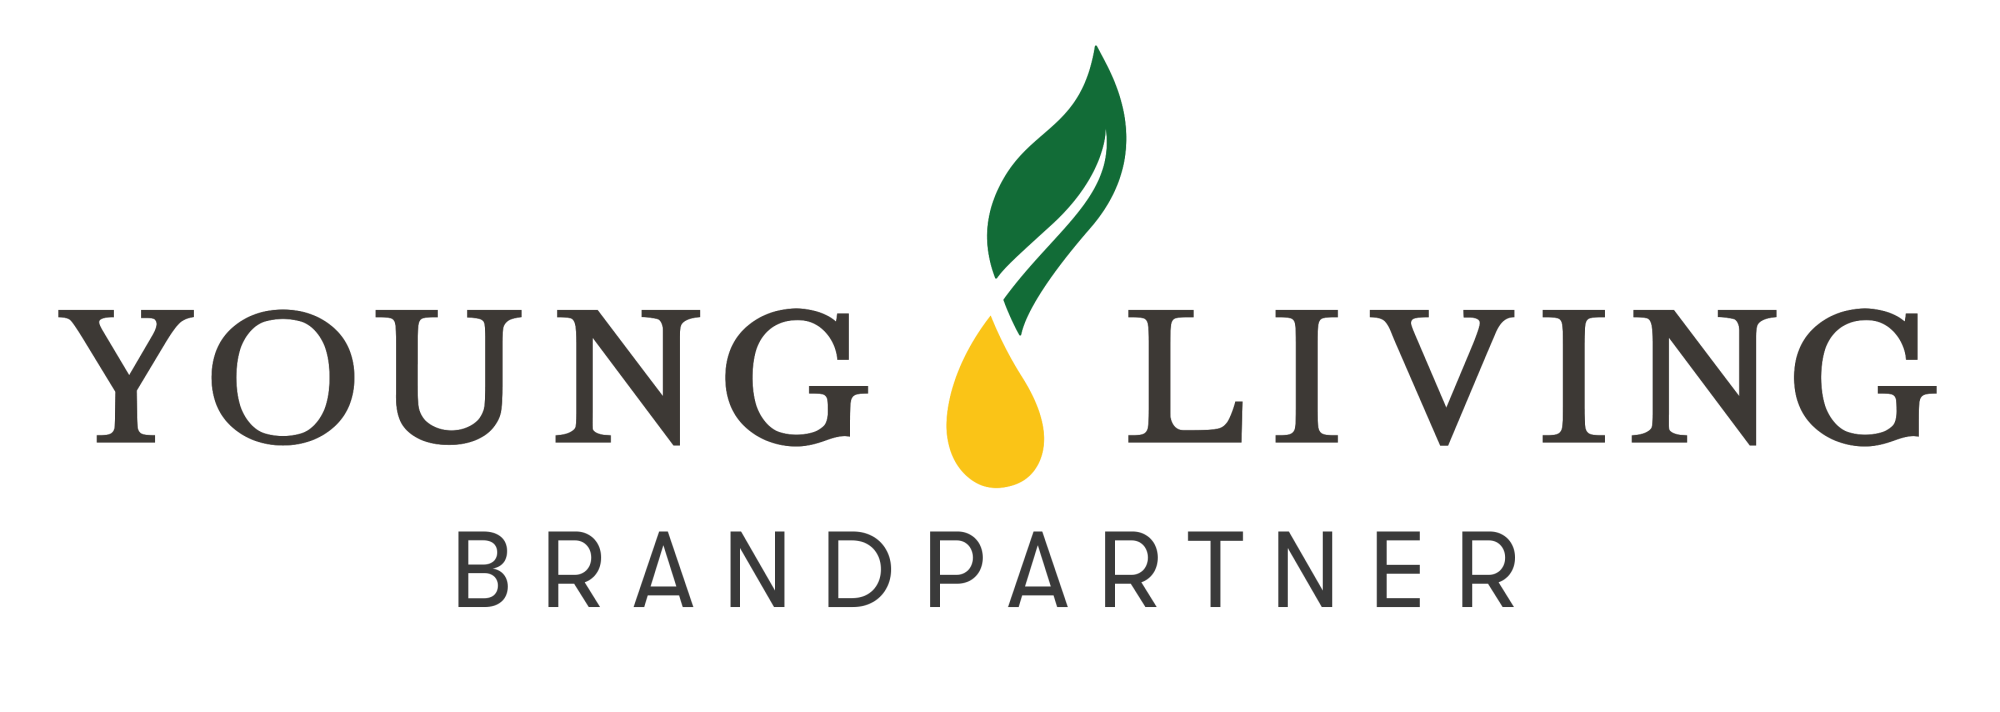 yl_brand_partner_logo-nl